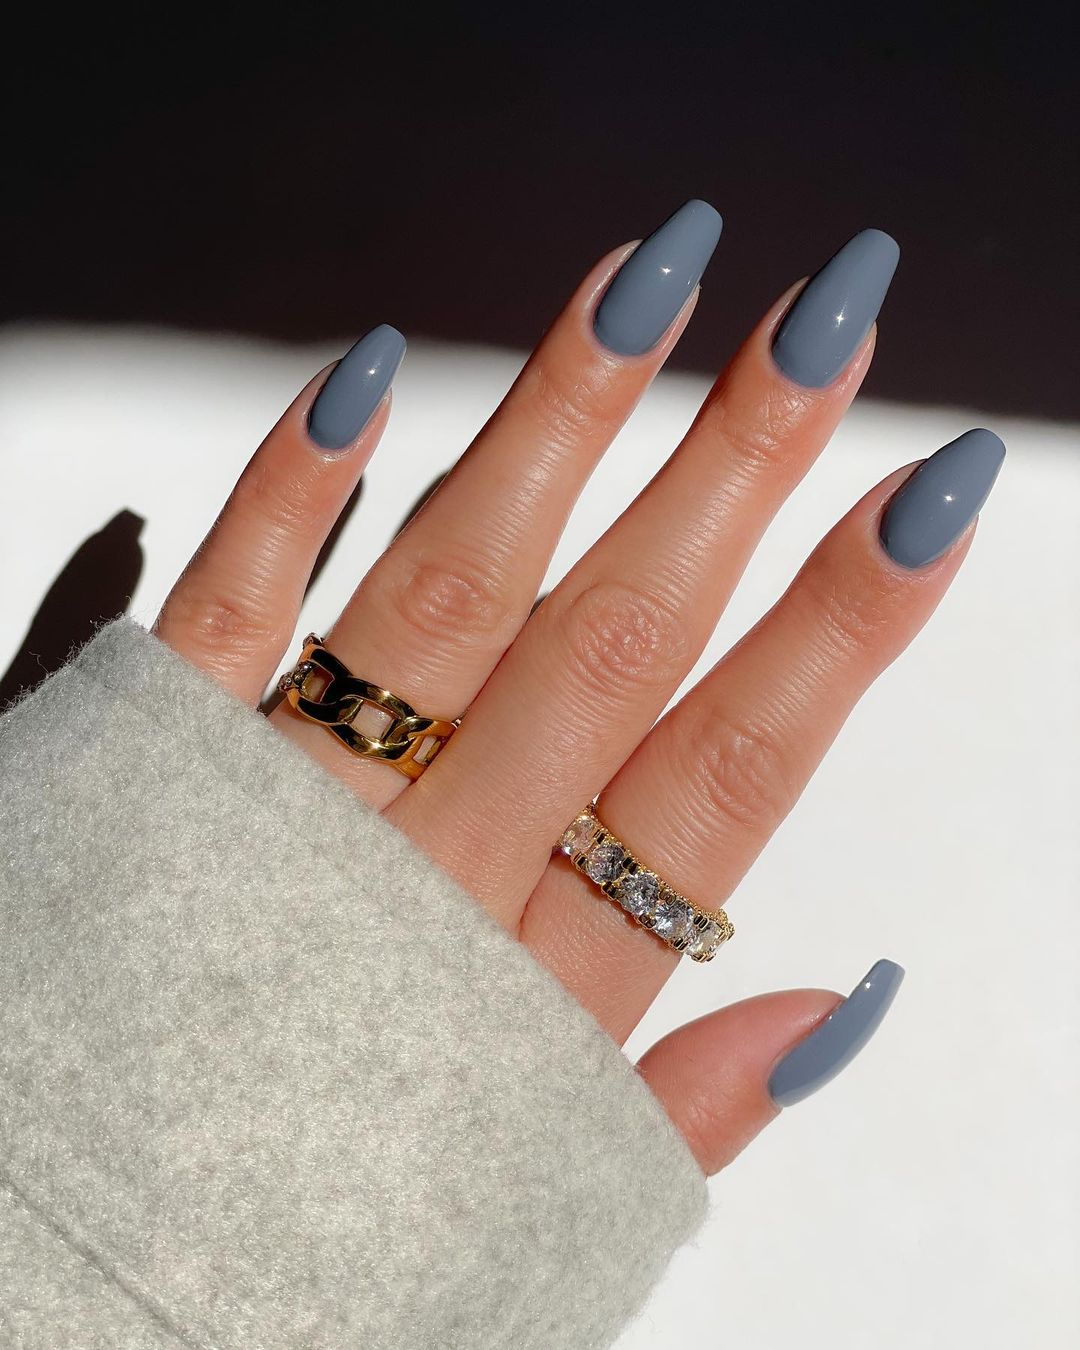 Diseños de uñas color gris - Disseynails en Instagram